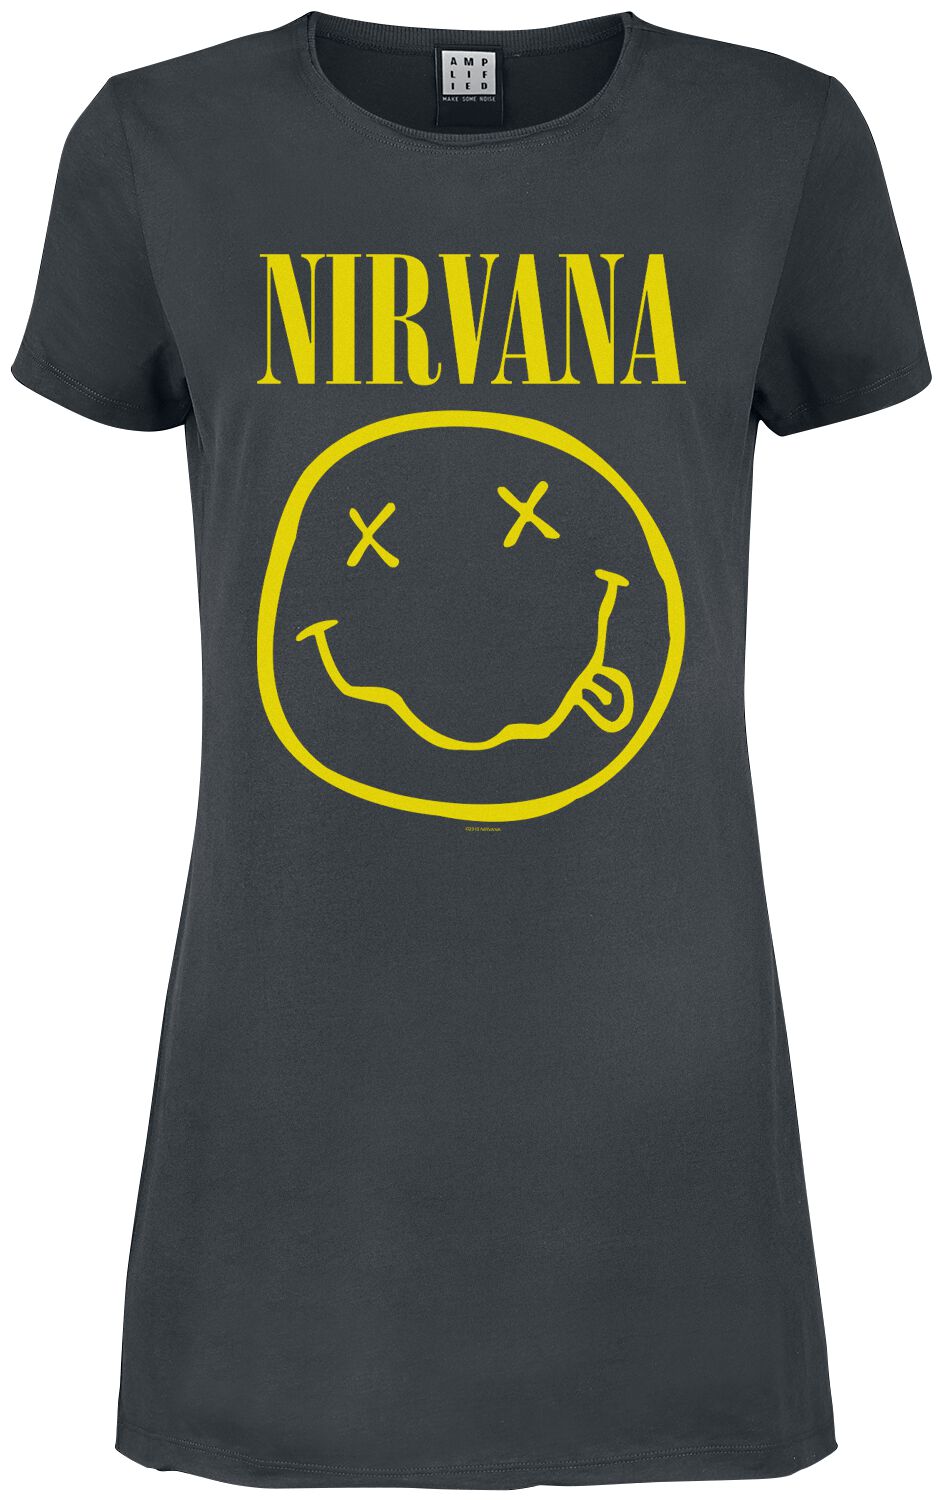 Nirvana Kurzes Kleid - Amplified Collection - Smiley - S bis XXL - für Damen - Größe S - charcoal  - Lizenziertes Merchandise!